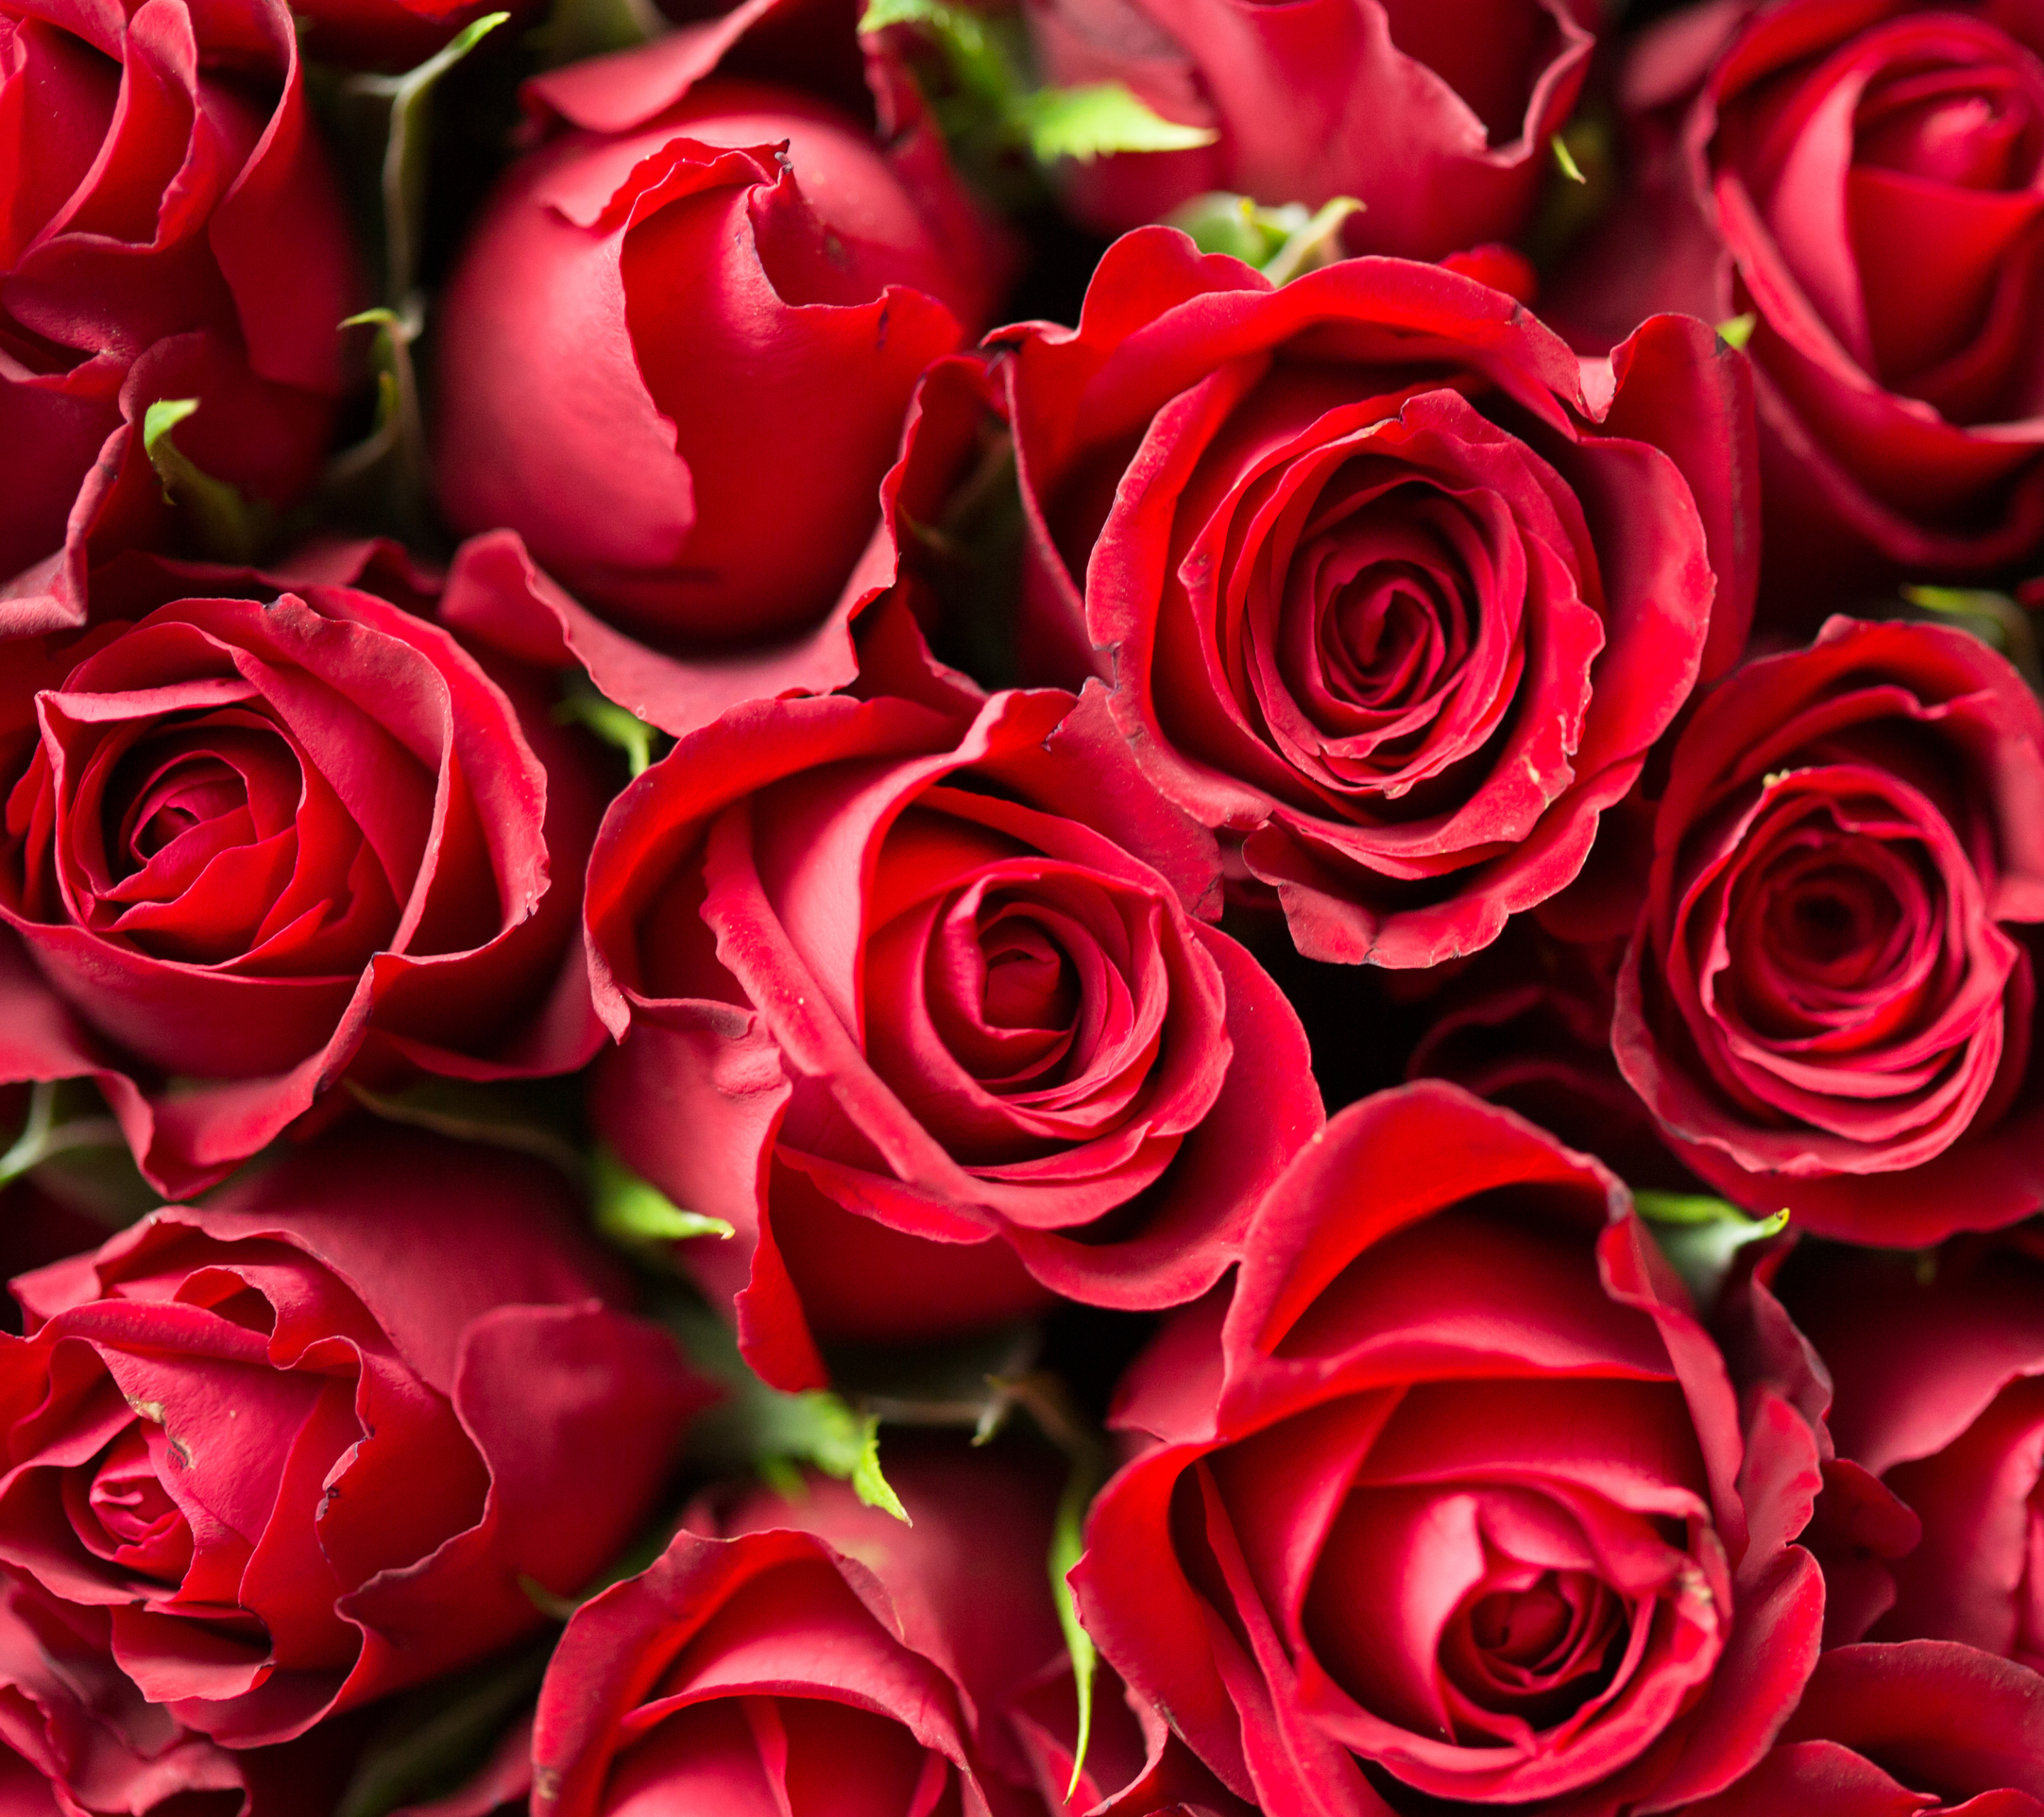 Скачать обои бесплатно Природа, Цветок, Роза, Красная Роза, Красный Цветок, Земля/природа, Флауэрсы картинка на рабочий стол ПК